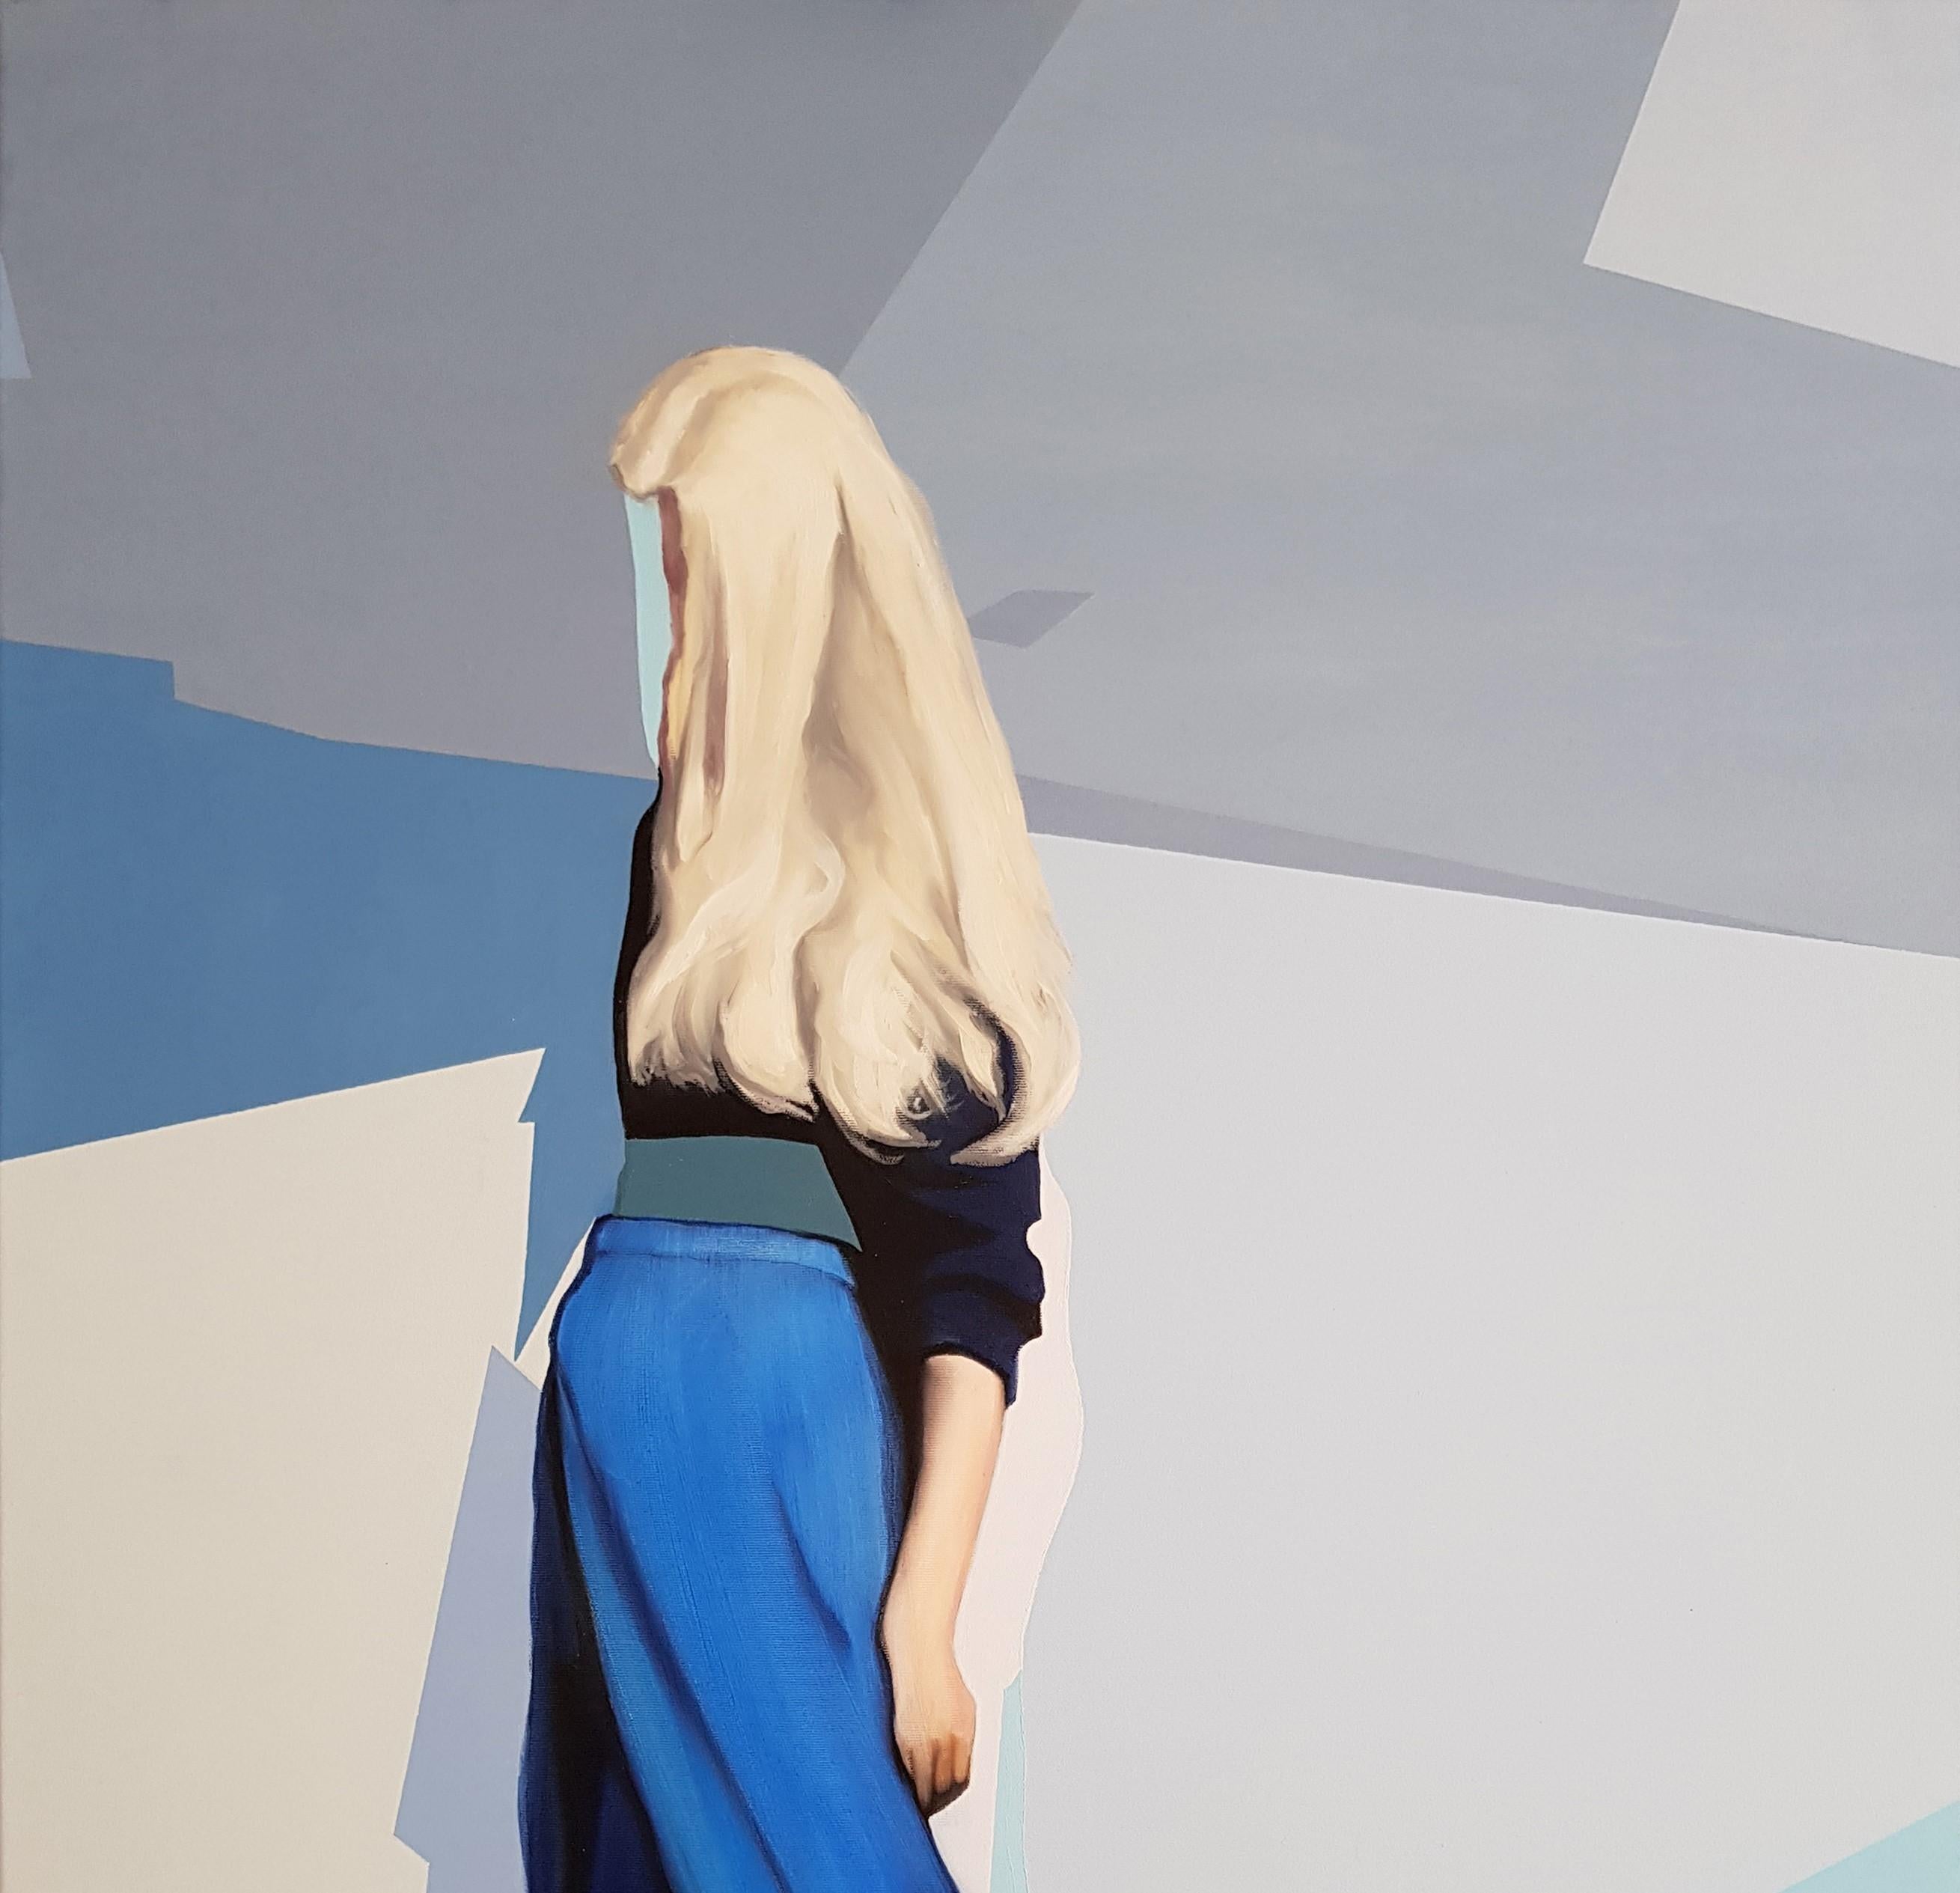 Enigma linaire - Contemporain, Peinture, Bleu, Femme, Blonde, XXIe sicle - Painting de Radu Rodideal